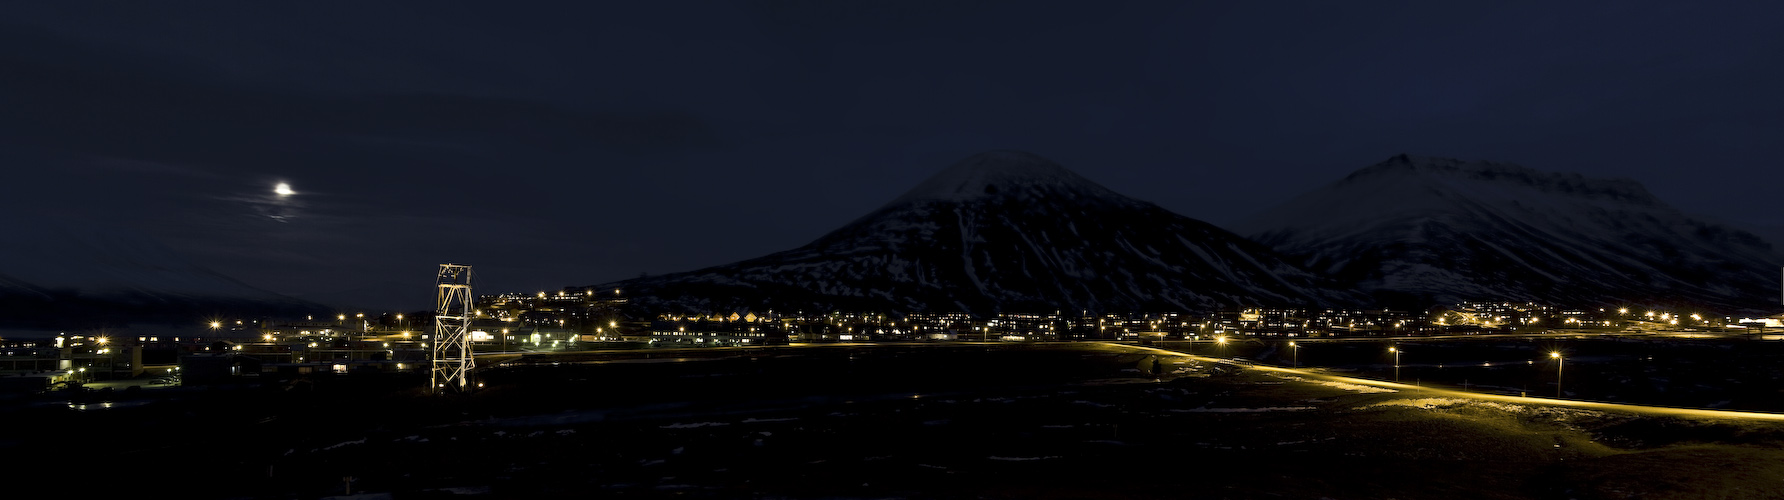 Svalbard08_10_13 II